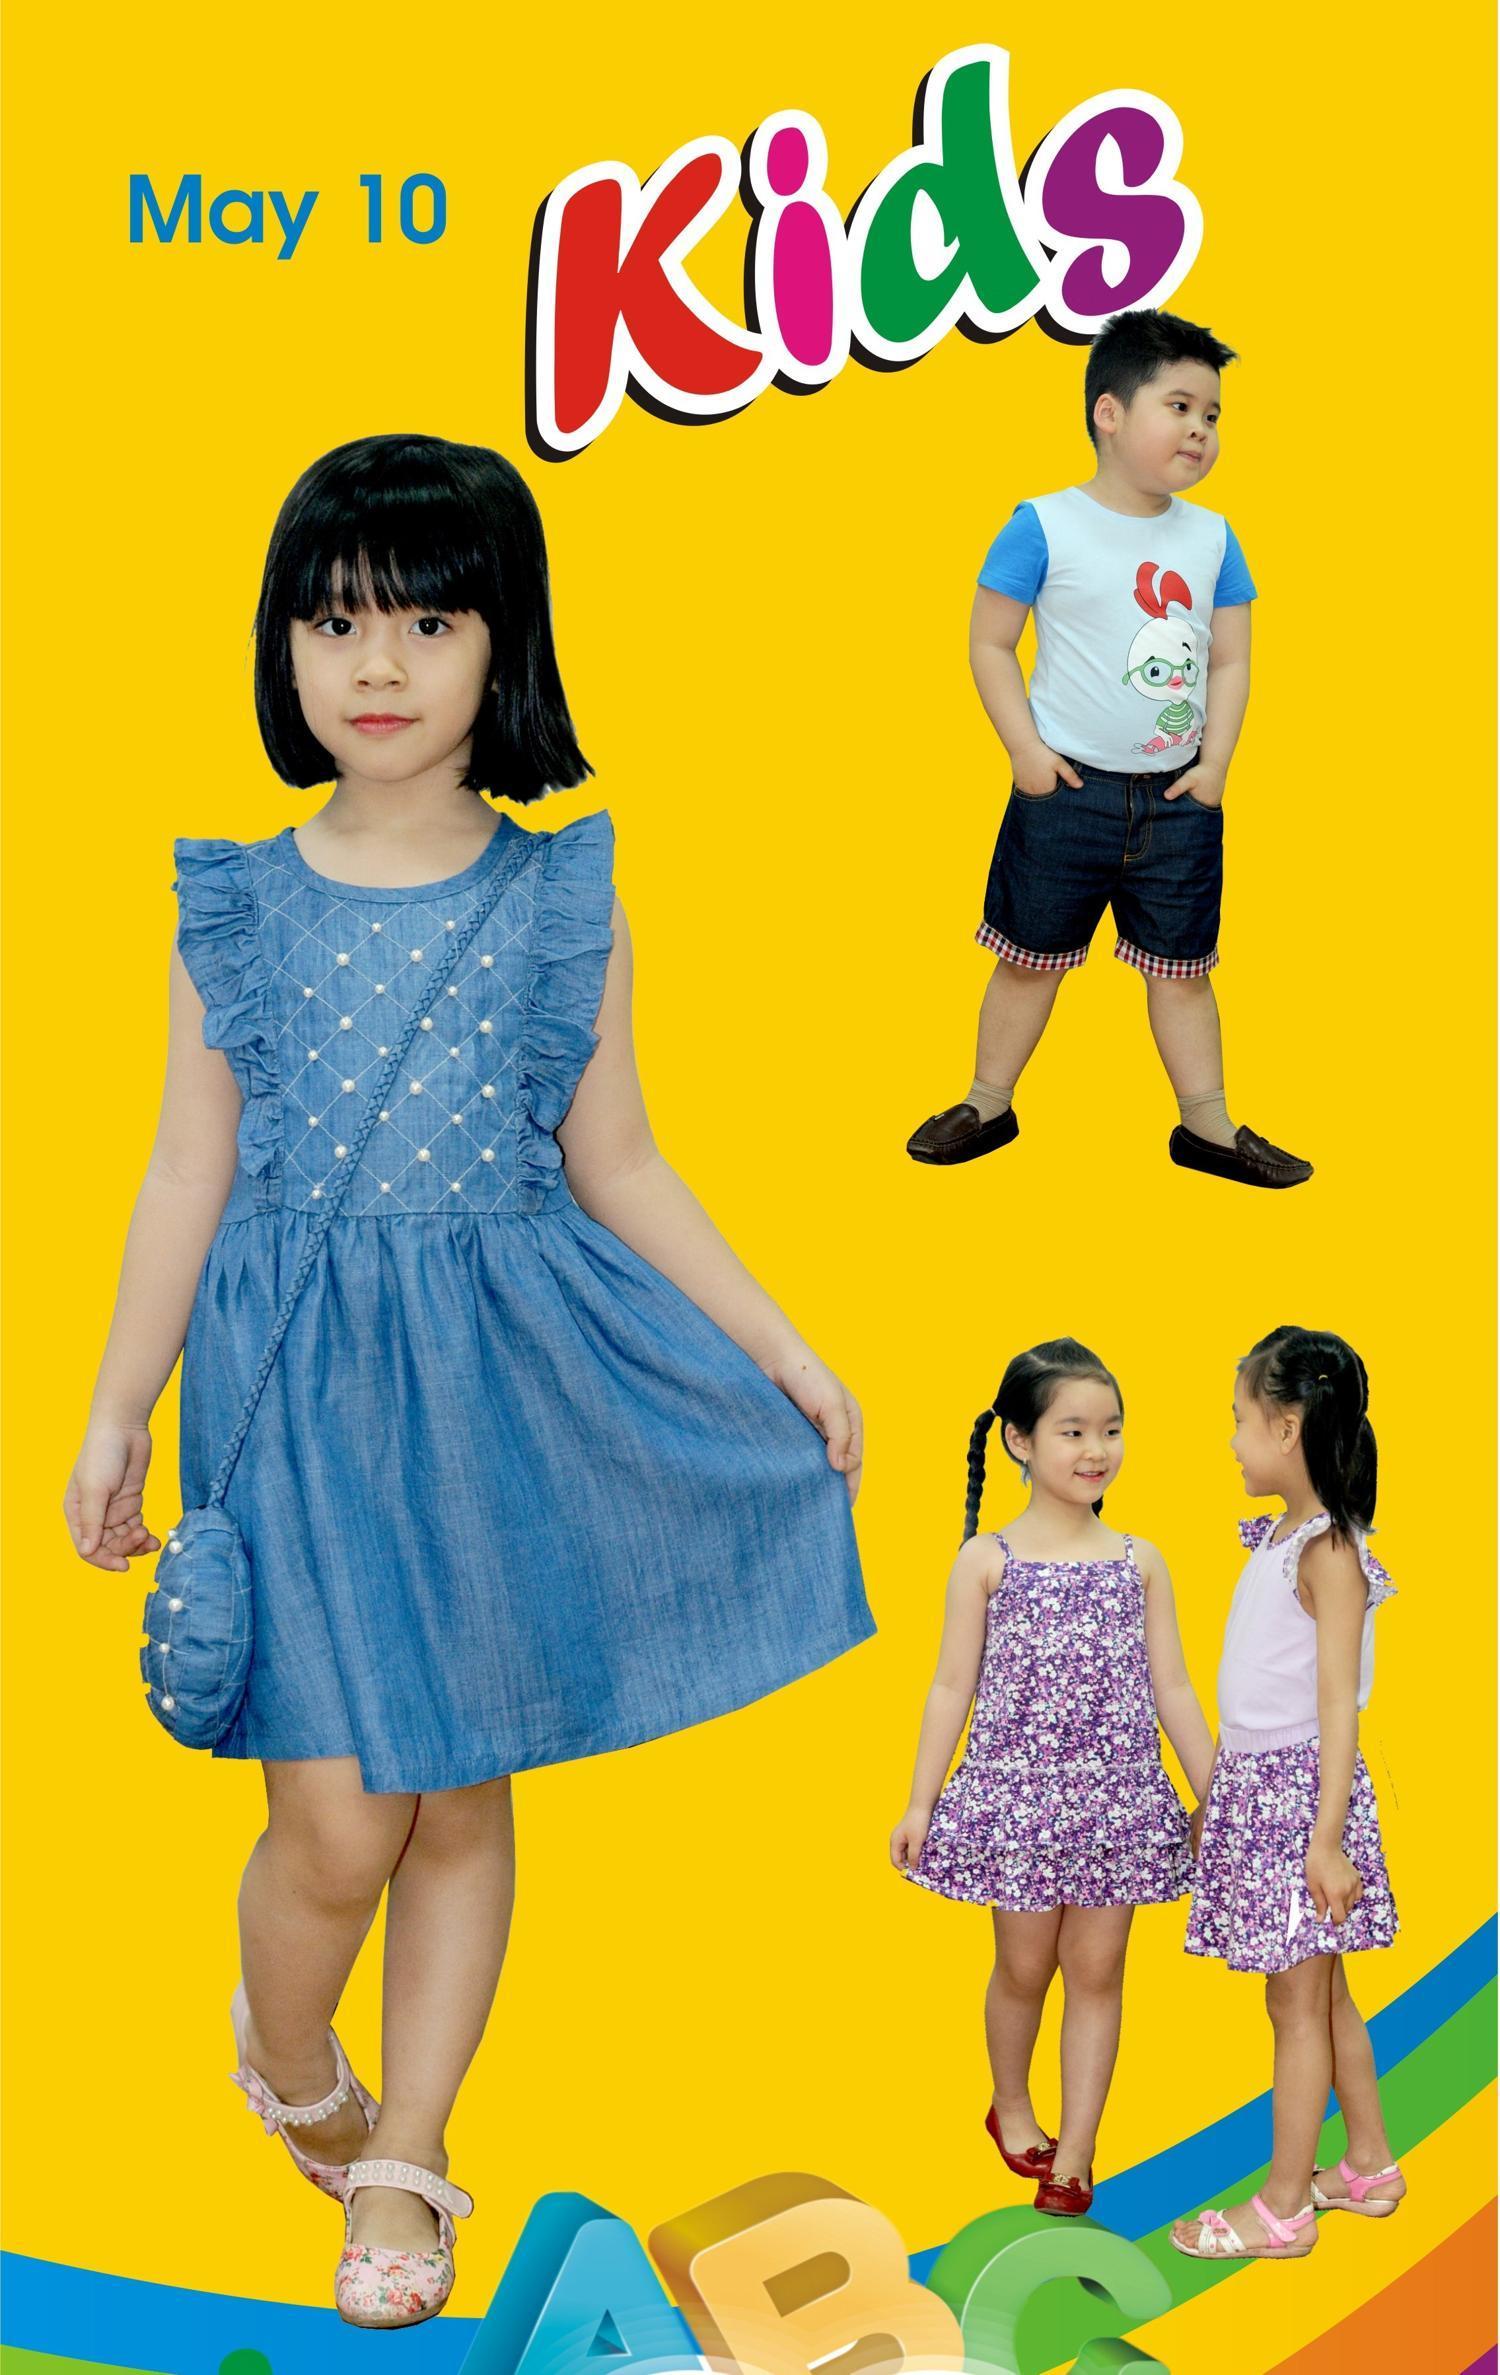 Ra mắt sản phẩm trẻ em M10 Kids chi nhánh Hồ Chí Minh